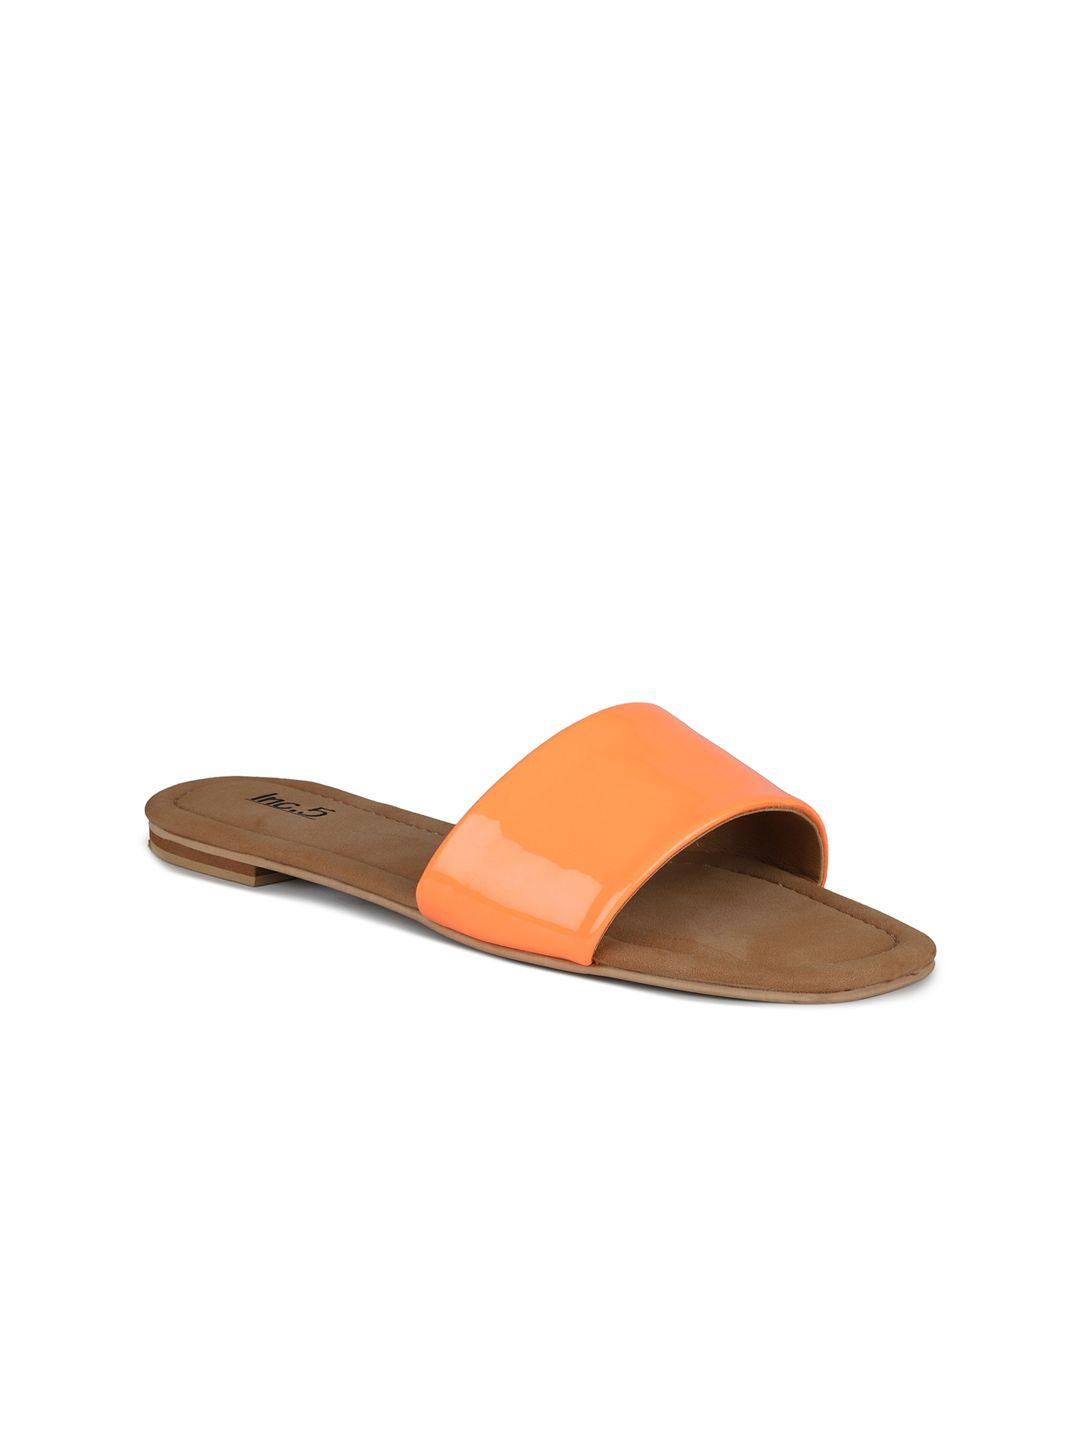 inc 5 women orange open toe flats